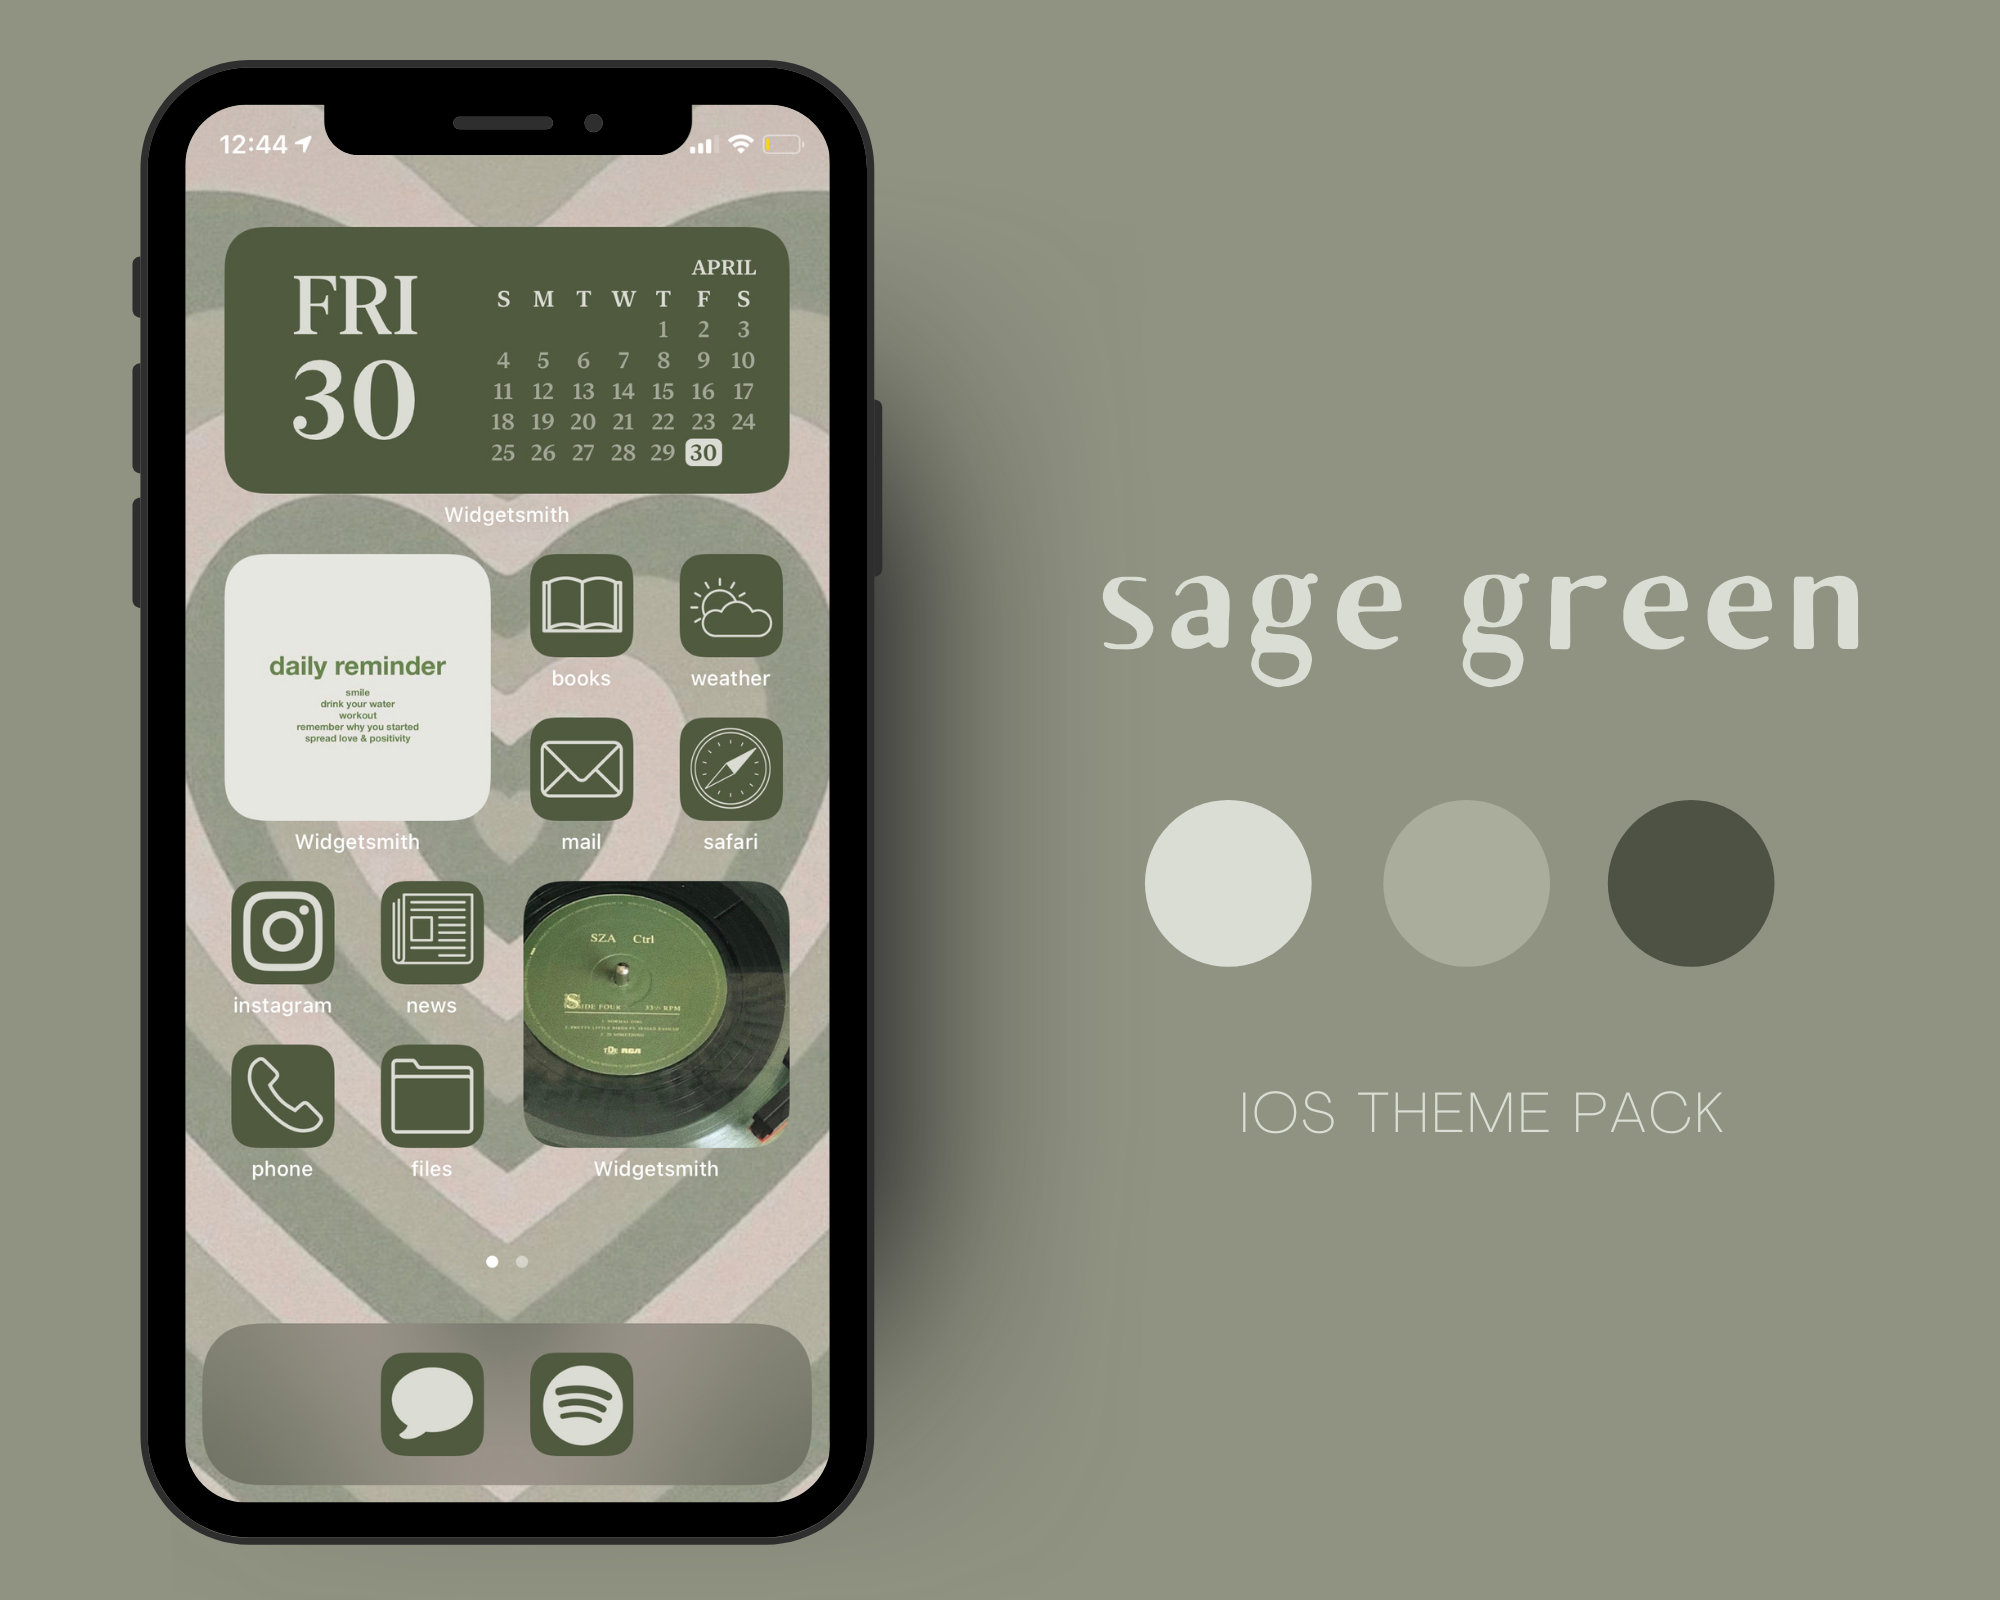 Giao diện IOS xanh lá cây sẽ mang đến cho smartphone của bạn một diện mạo mới lạ và độc đáo. Với màu xanh lá cây tươi tắn và thanh lịch, phiên bản này sẽ thay đổi hoàn toàn cách nhìn của bạn về điện thoại. Hãy thưởng thức các hình ảnh liên quan đến giao diện IOS xanh lá cây trên thiết bị của bạn.